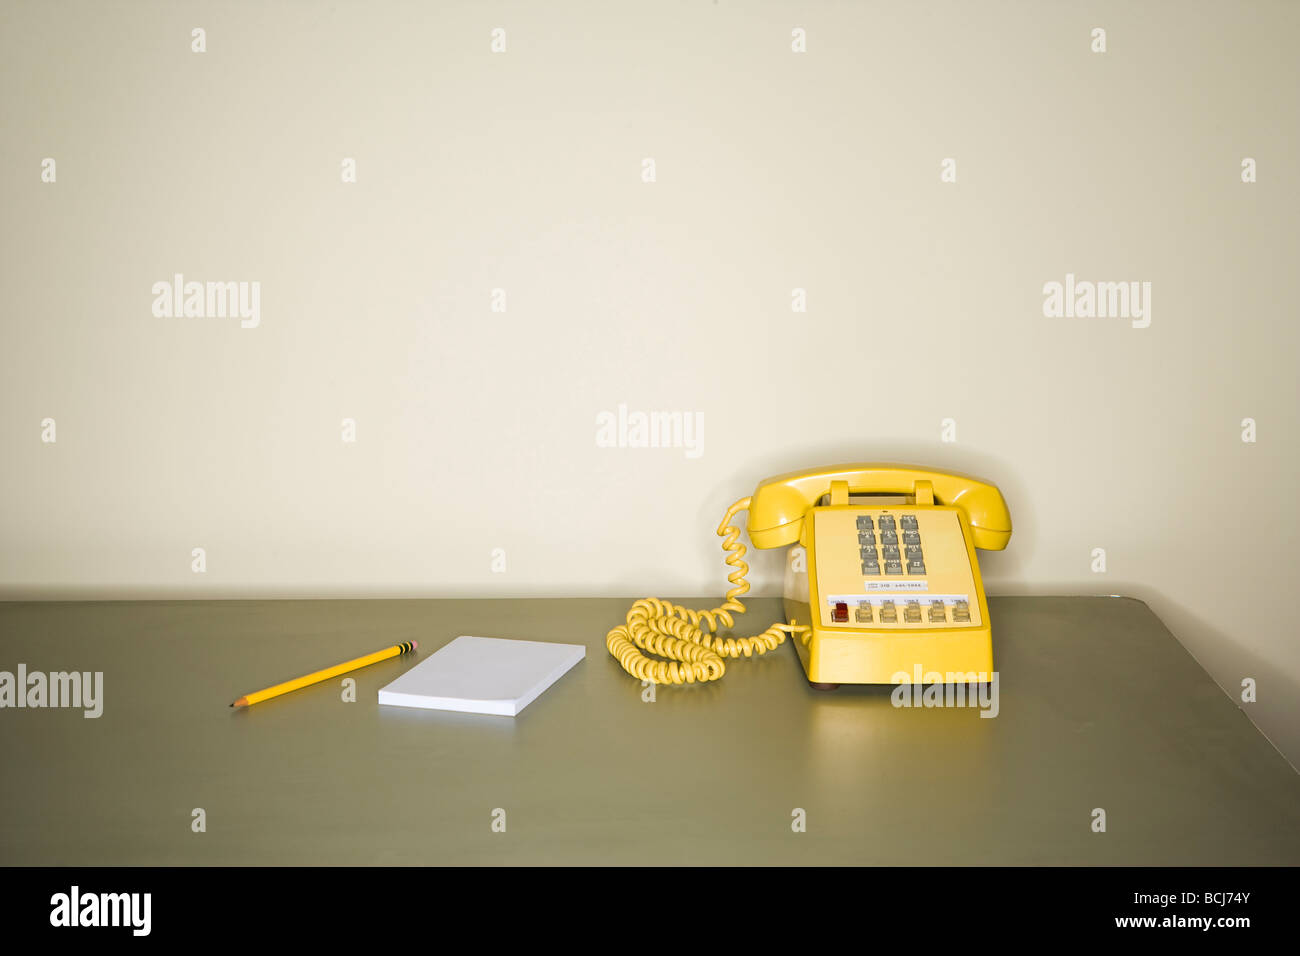 Giallo telefono a toni seduto sulla scrivania in metallo nella parte anteriore della parete bianca. Matita e pad di carta seduto accanto al telefono sulla scrivania Foto Stock